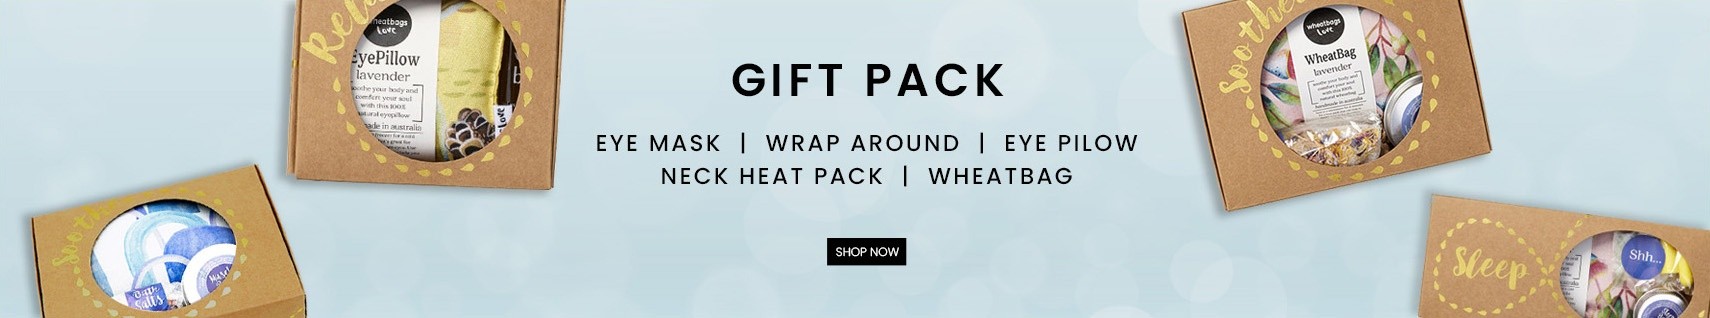 gift pack